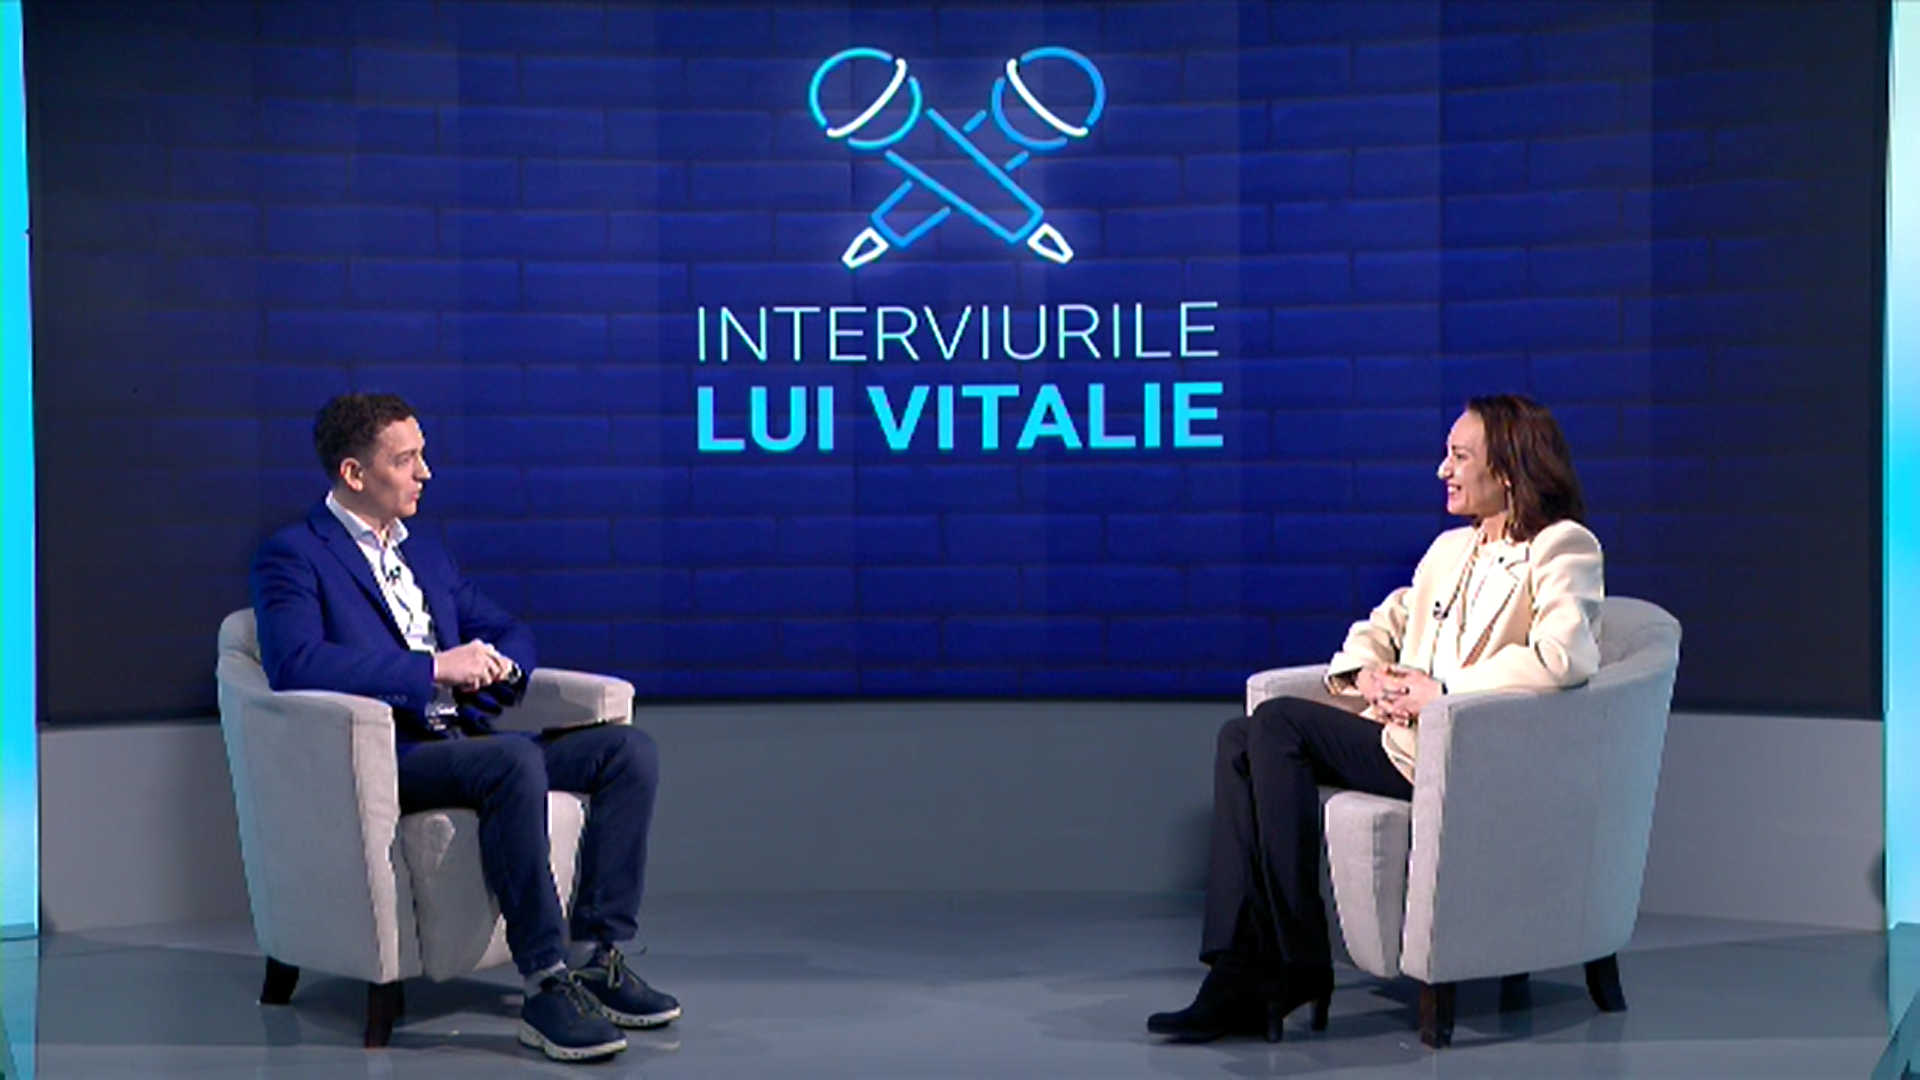 Interviu cu Liudmila Climoc, CEO Orange România. Despre achiziția fostului Romtelecom și teoriile conspirației